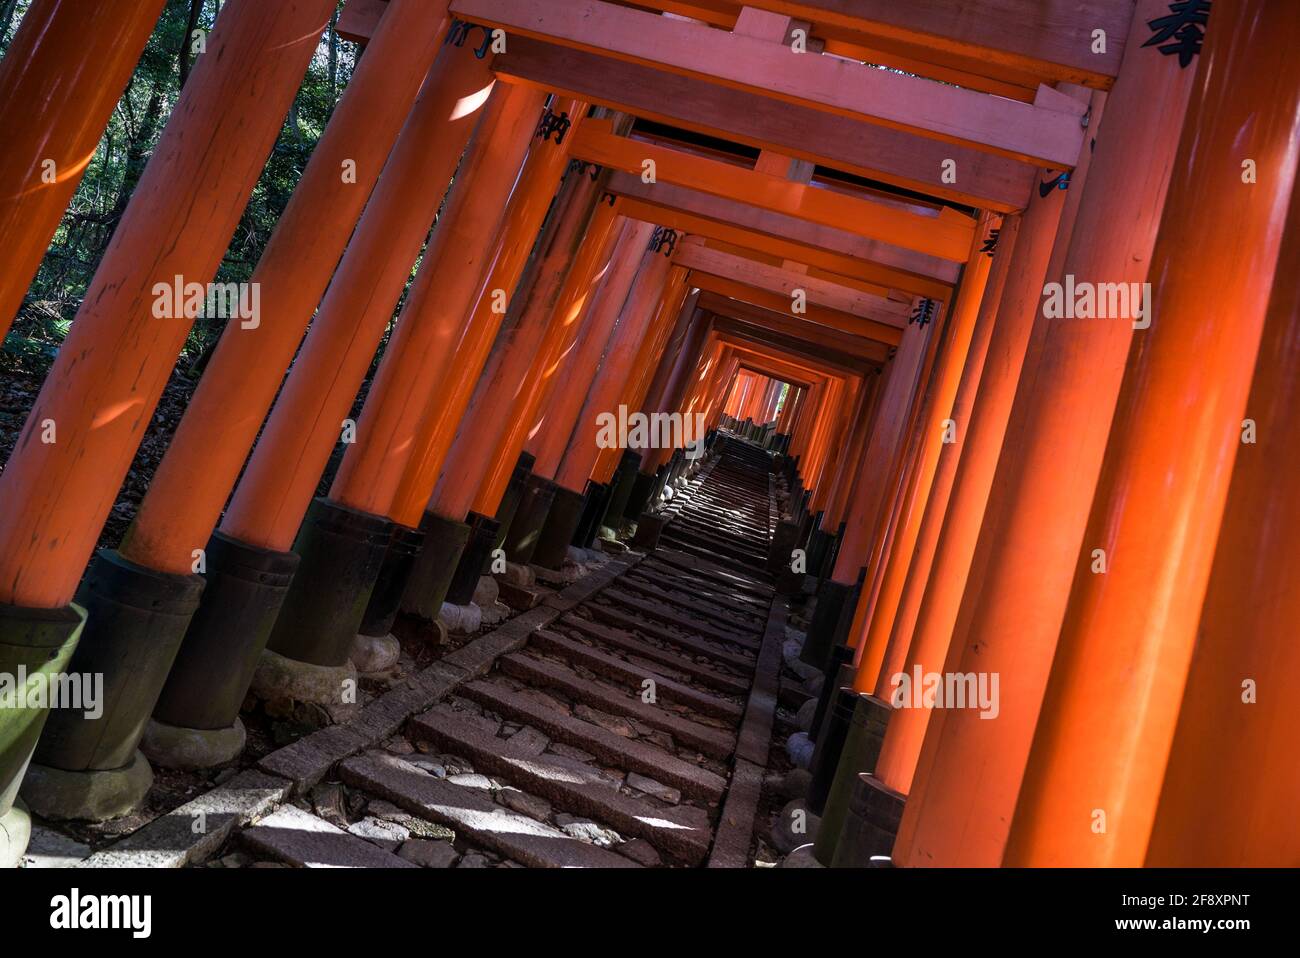 Fushimi Inari Taisha, camminando attraverso migliaia di porte torii rosse nel santuario religioso giapponese Shinto, Fushimi-ku, Kyoto, Giappone. Foto Stock